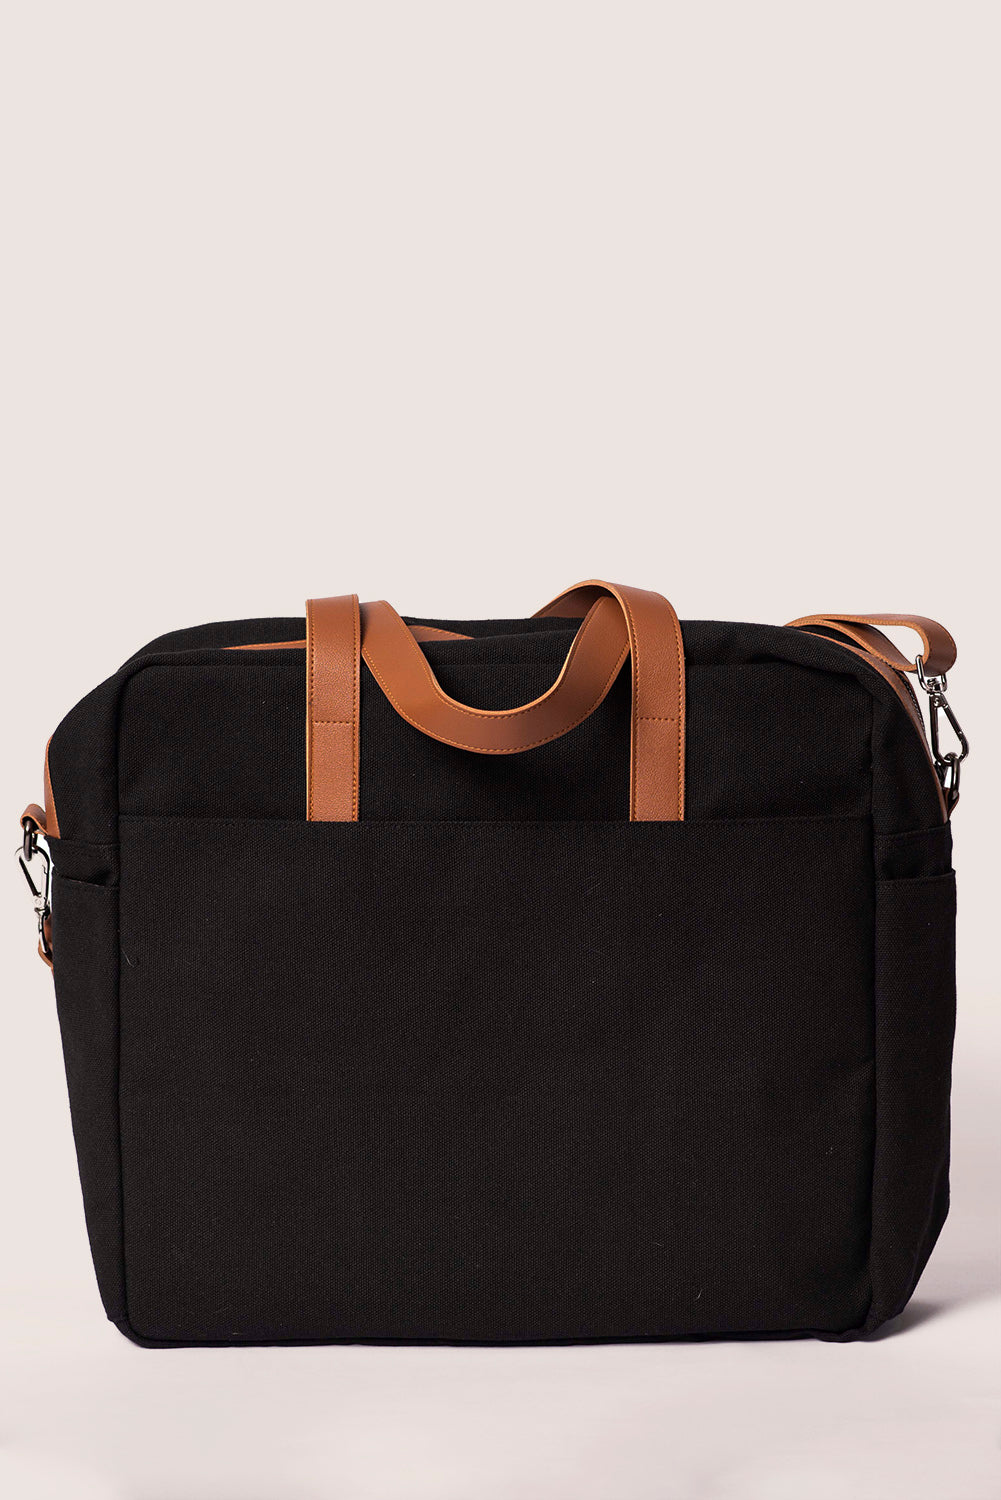 Oversized Black Travel Messenger Bag